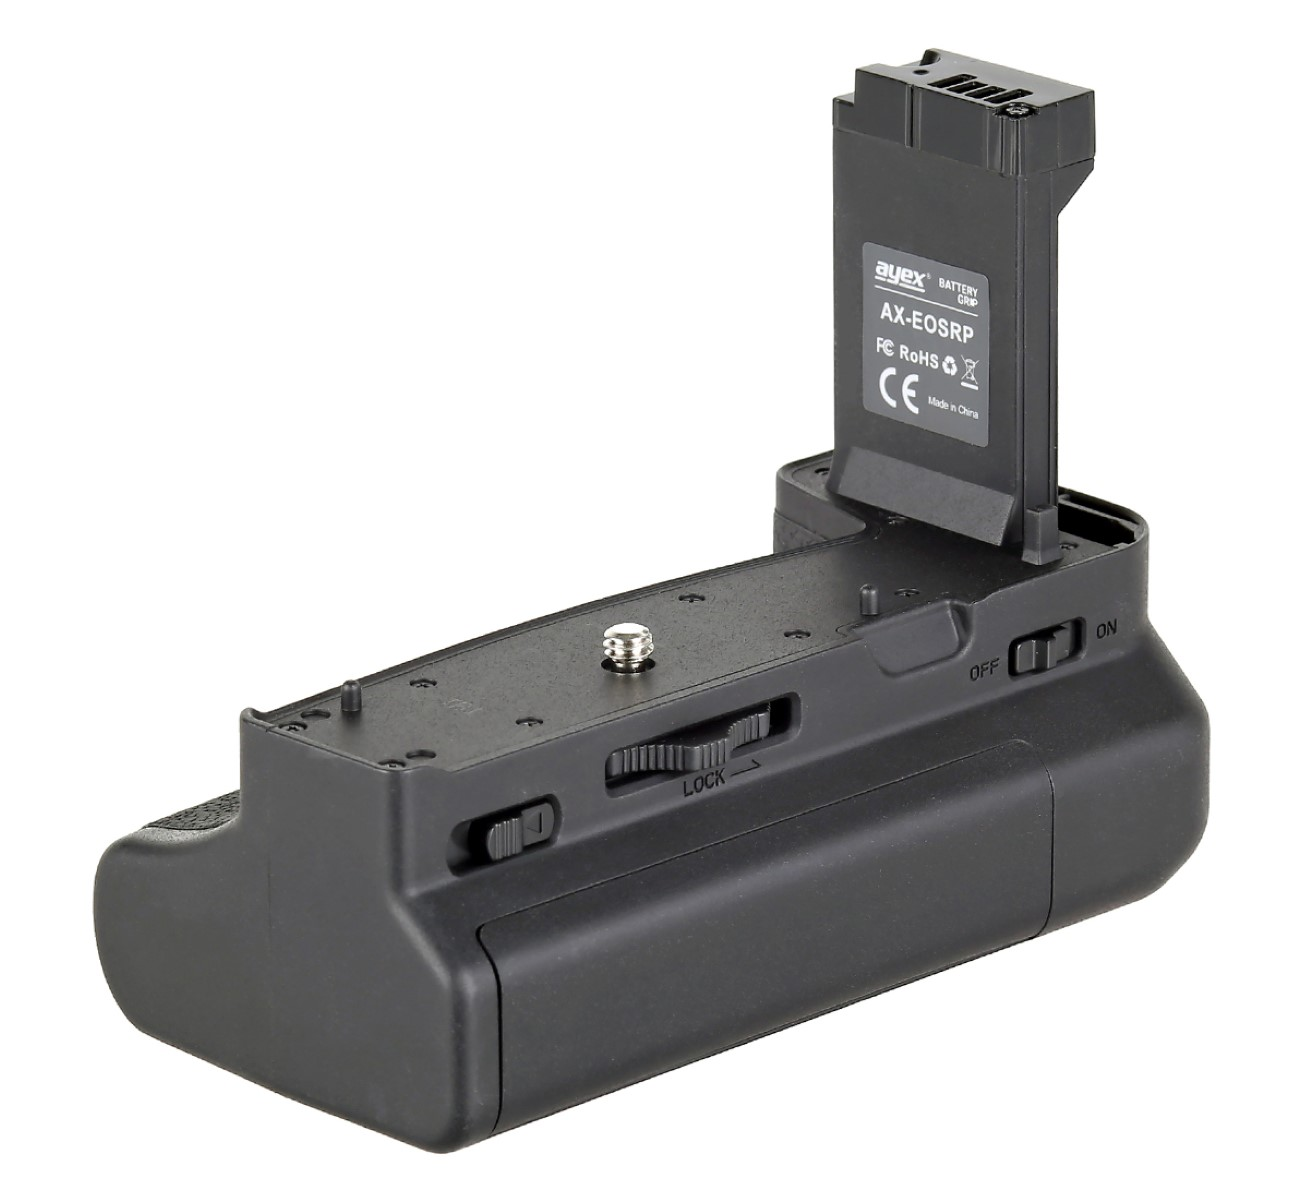 EOS Handgriff ähnlich Batteriegrifff R8 Batteriegriff, EG-E1, mit Canon Auslöseknopf AYEX RP Black